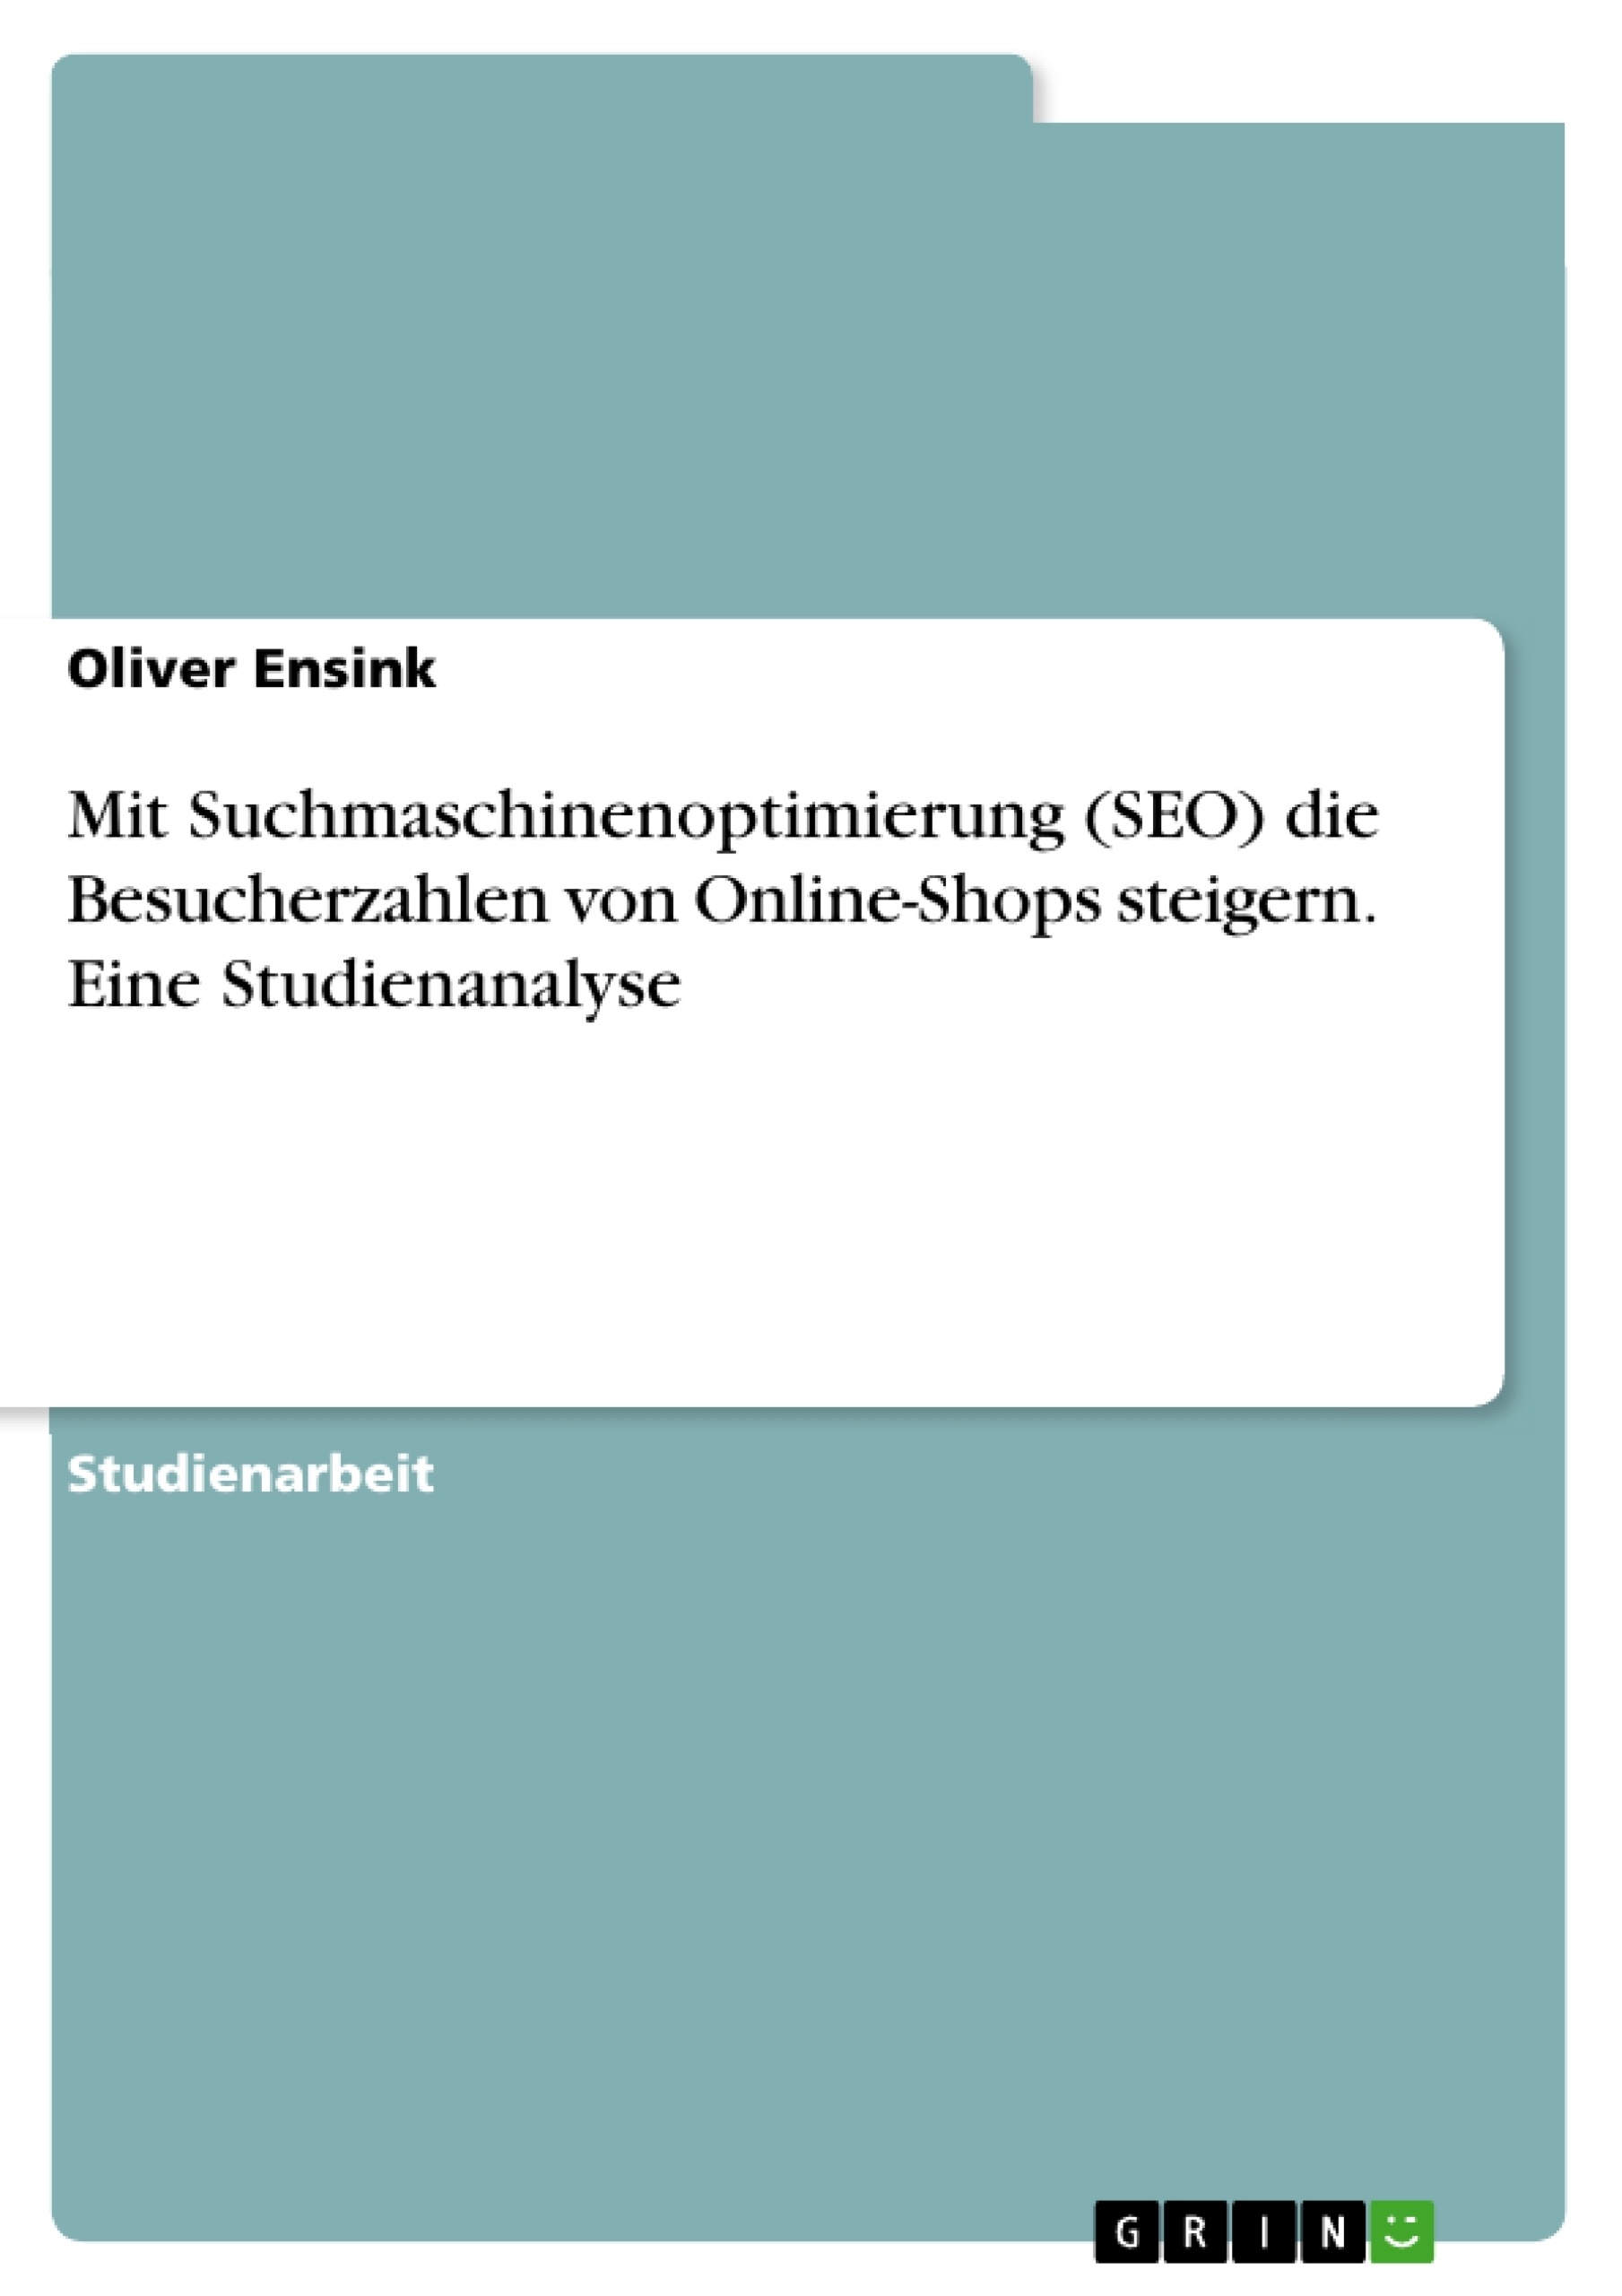 Title: Mit Suchmaschinenoptimierung (SEO) die Besucherzahlen von Online-Shops steigern. Eine Studienanalyse